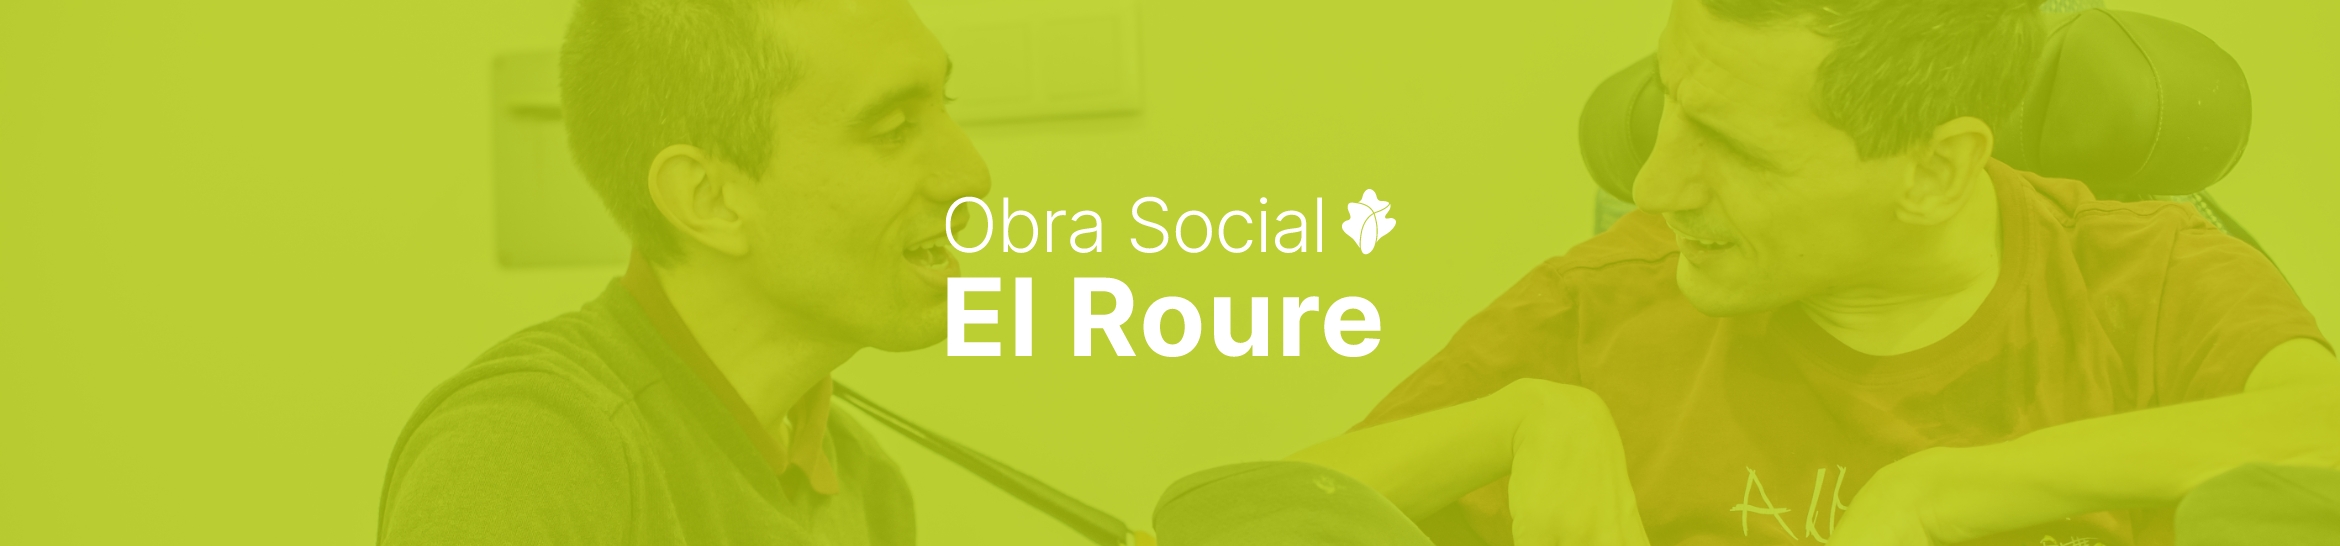 Obra Social El Roure